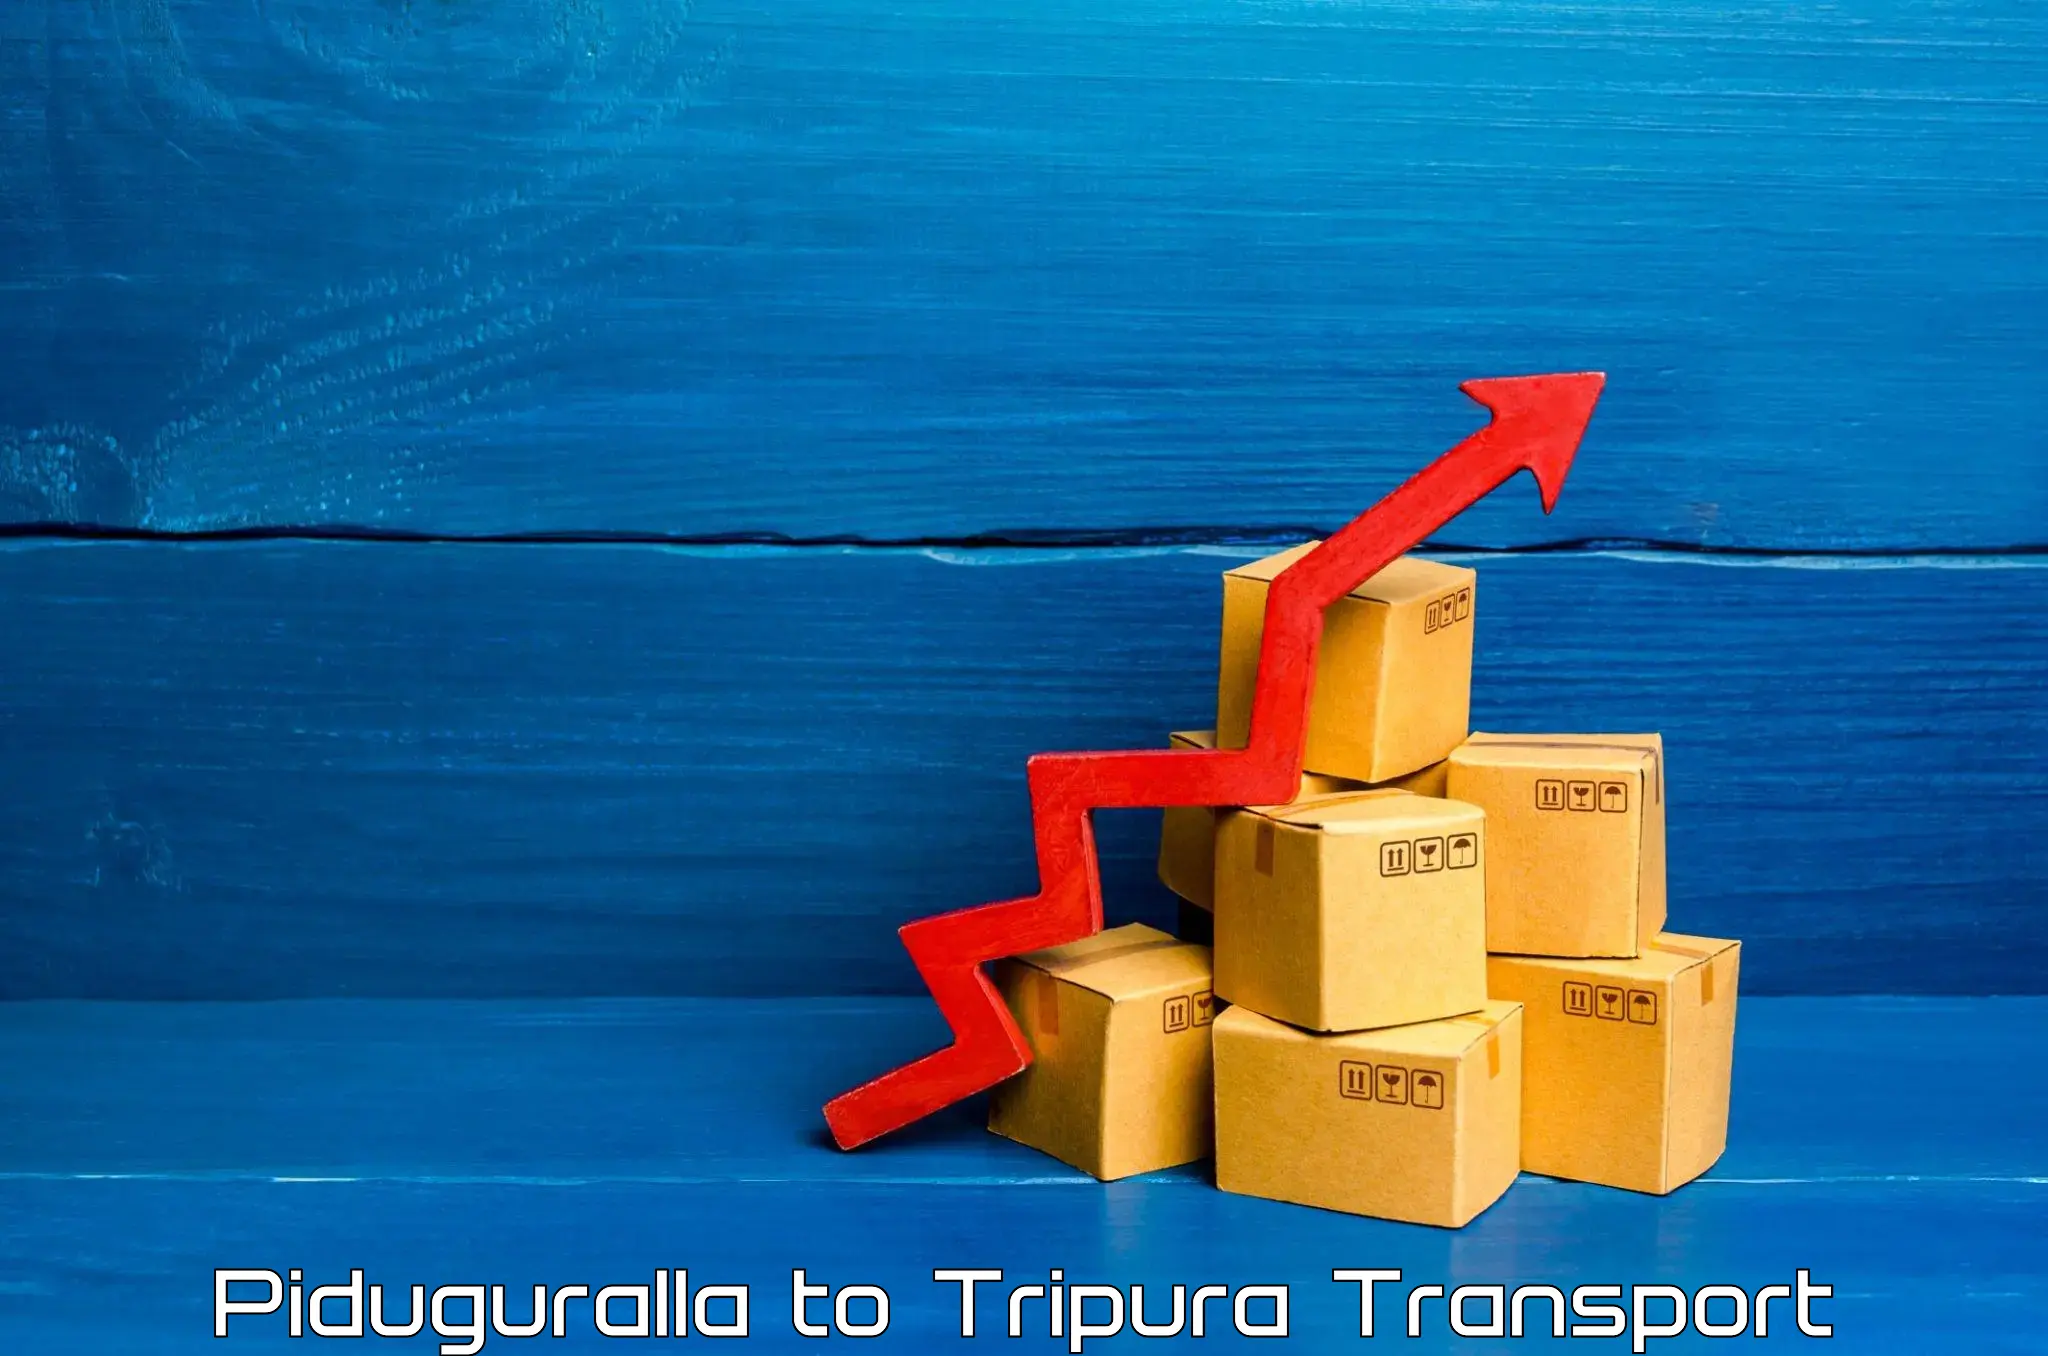 Nearby transport service Piduguralla to IIIT Agartala